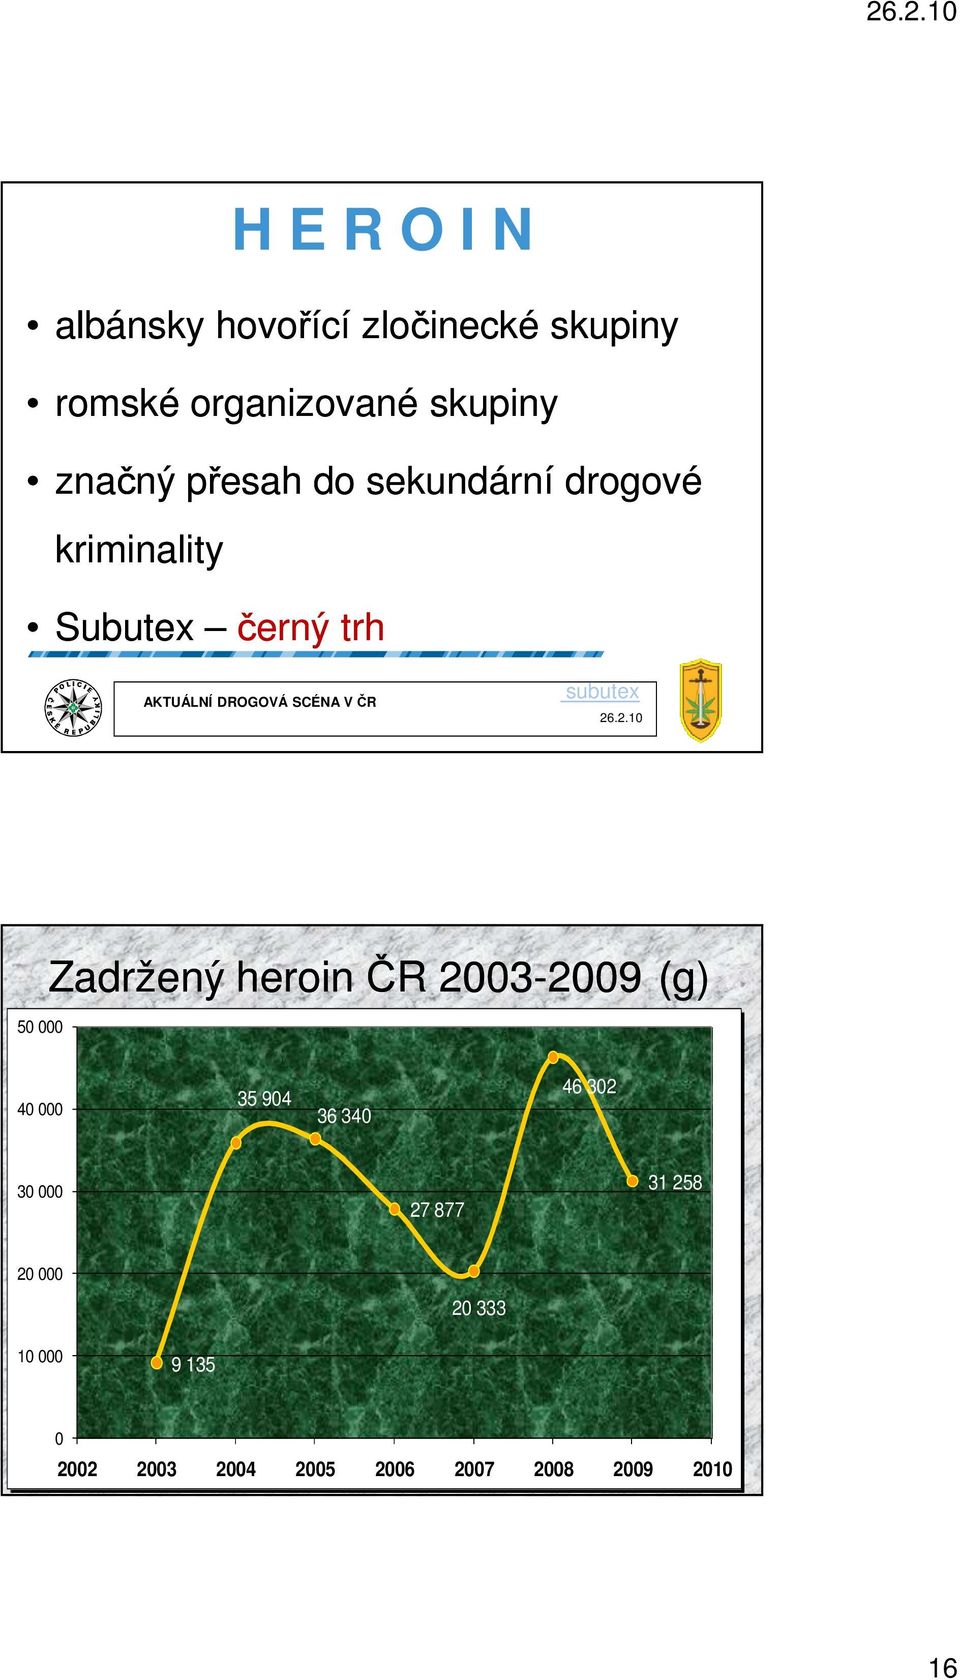 Zadržený heroin ČR 2003-2009 2009 (g) 40 000 35 904 36 340 46 302 30 000 27 877